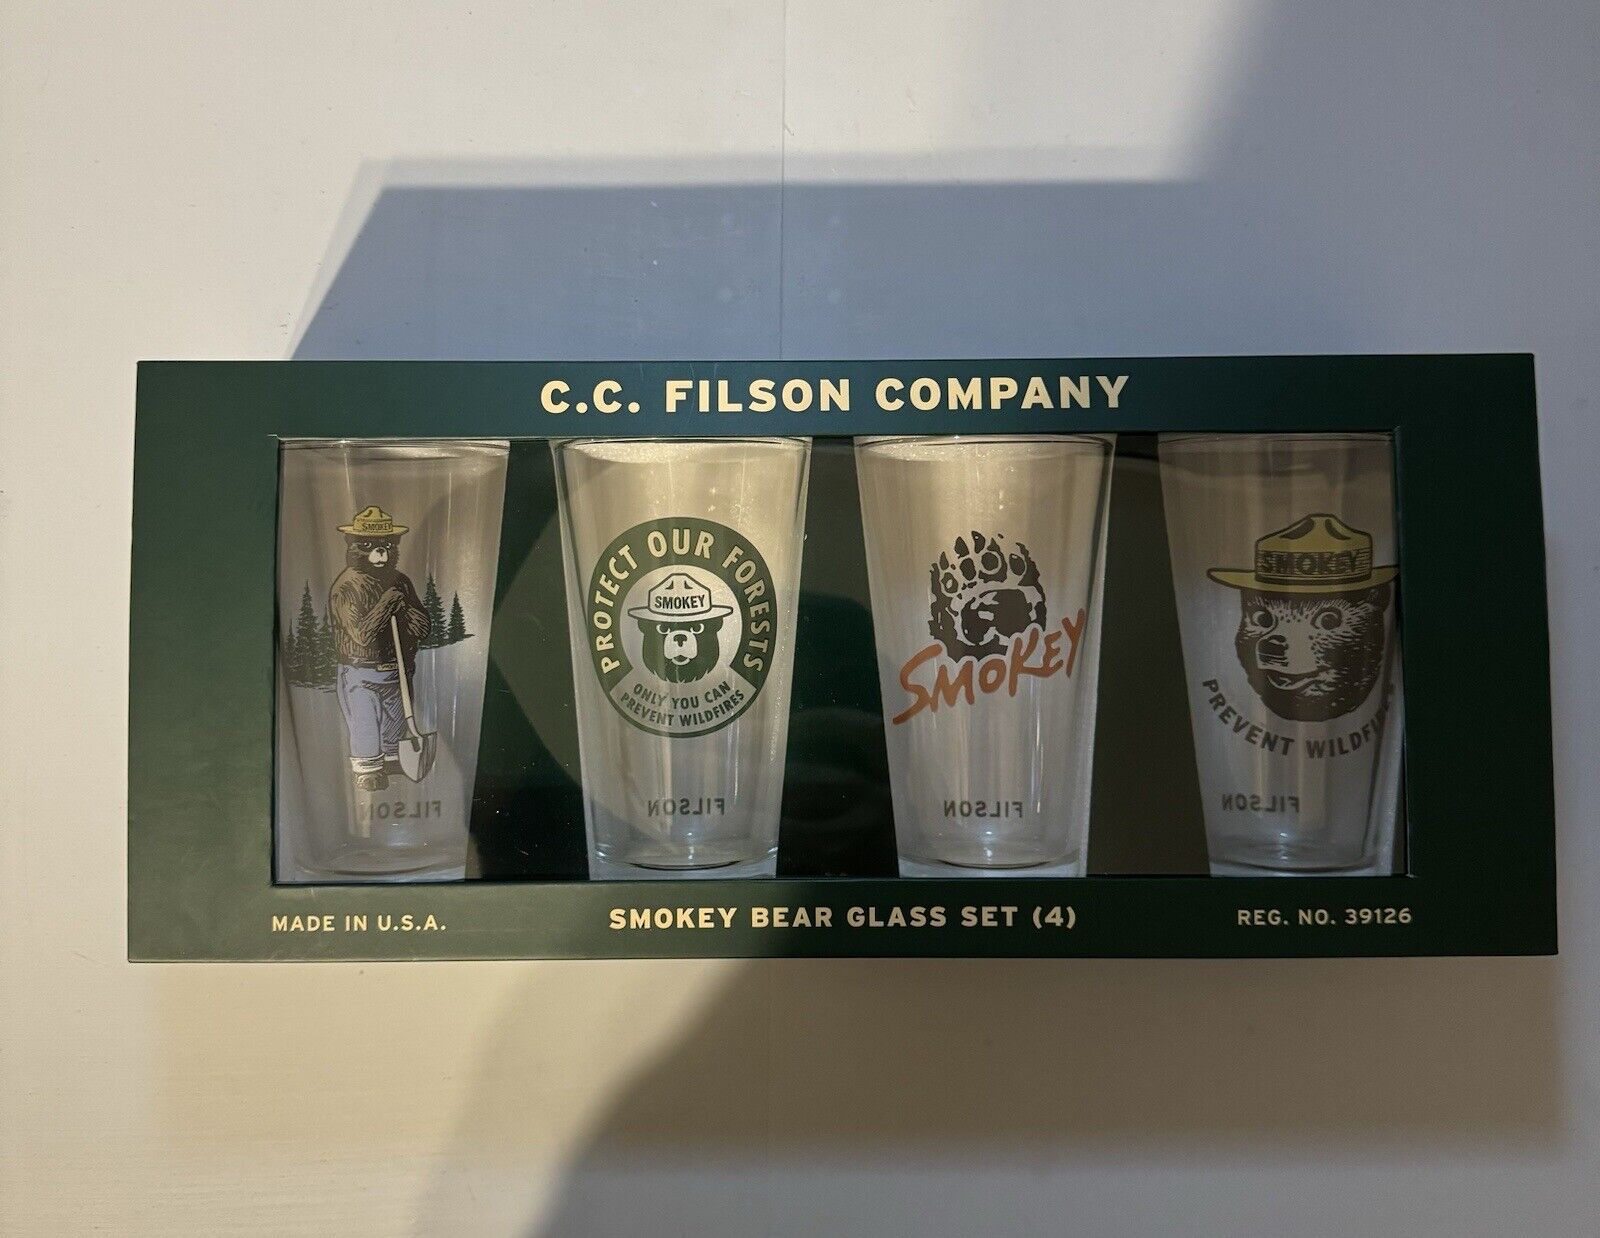 Filson Smokey Bear Glass Set REG. NO. 39126